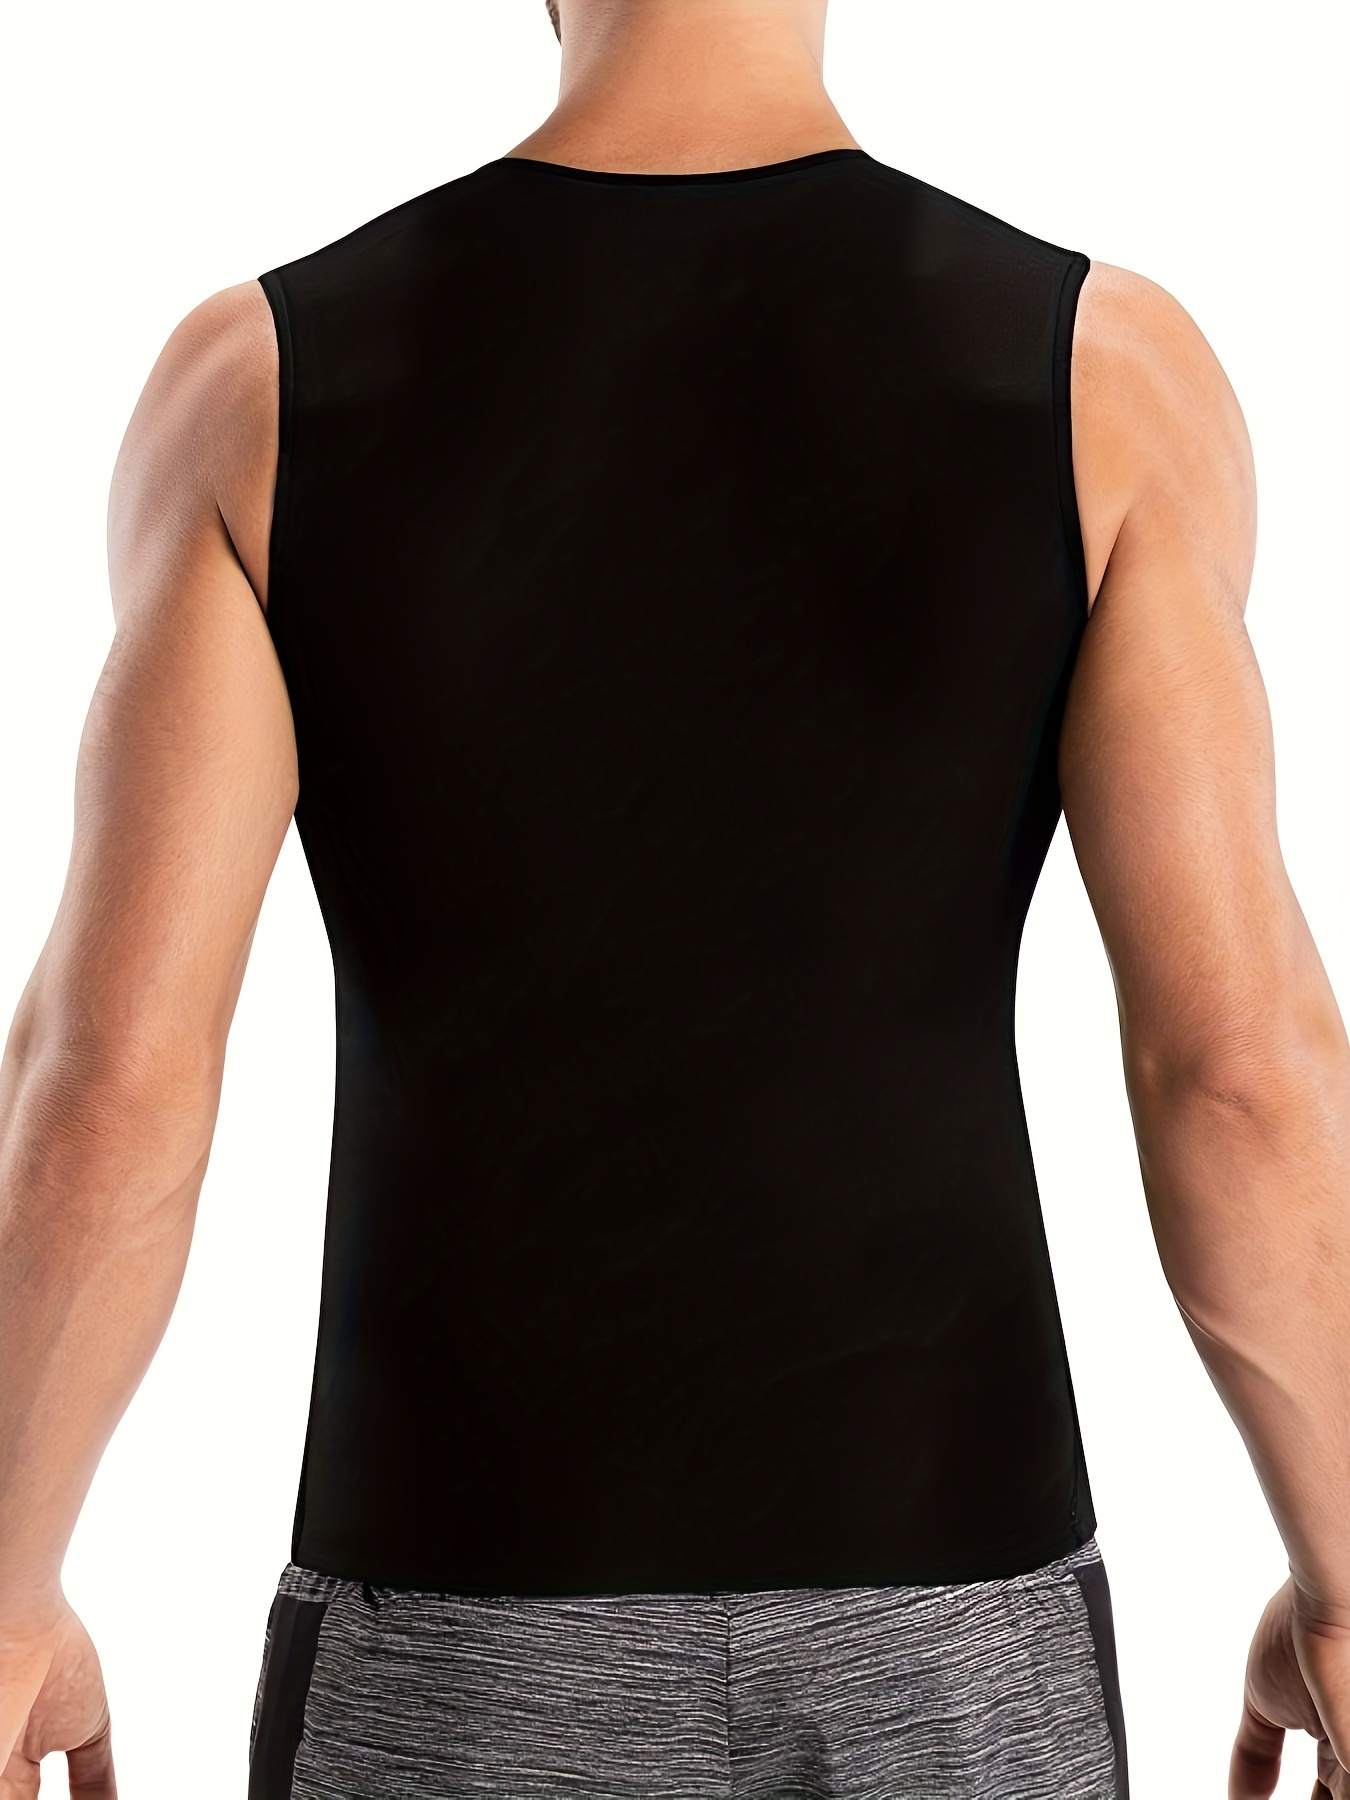 Men's Sauna Suit Sweat Vest Tank Top Neoprene T-Shirt Waist